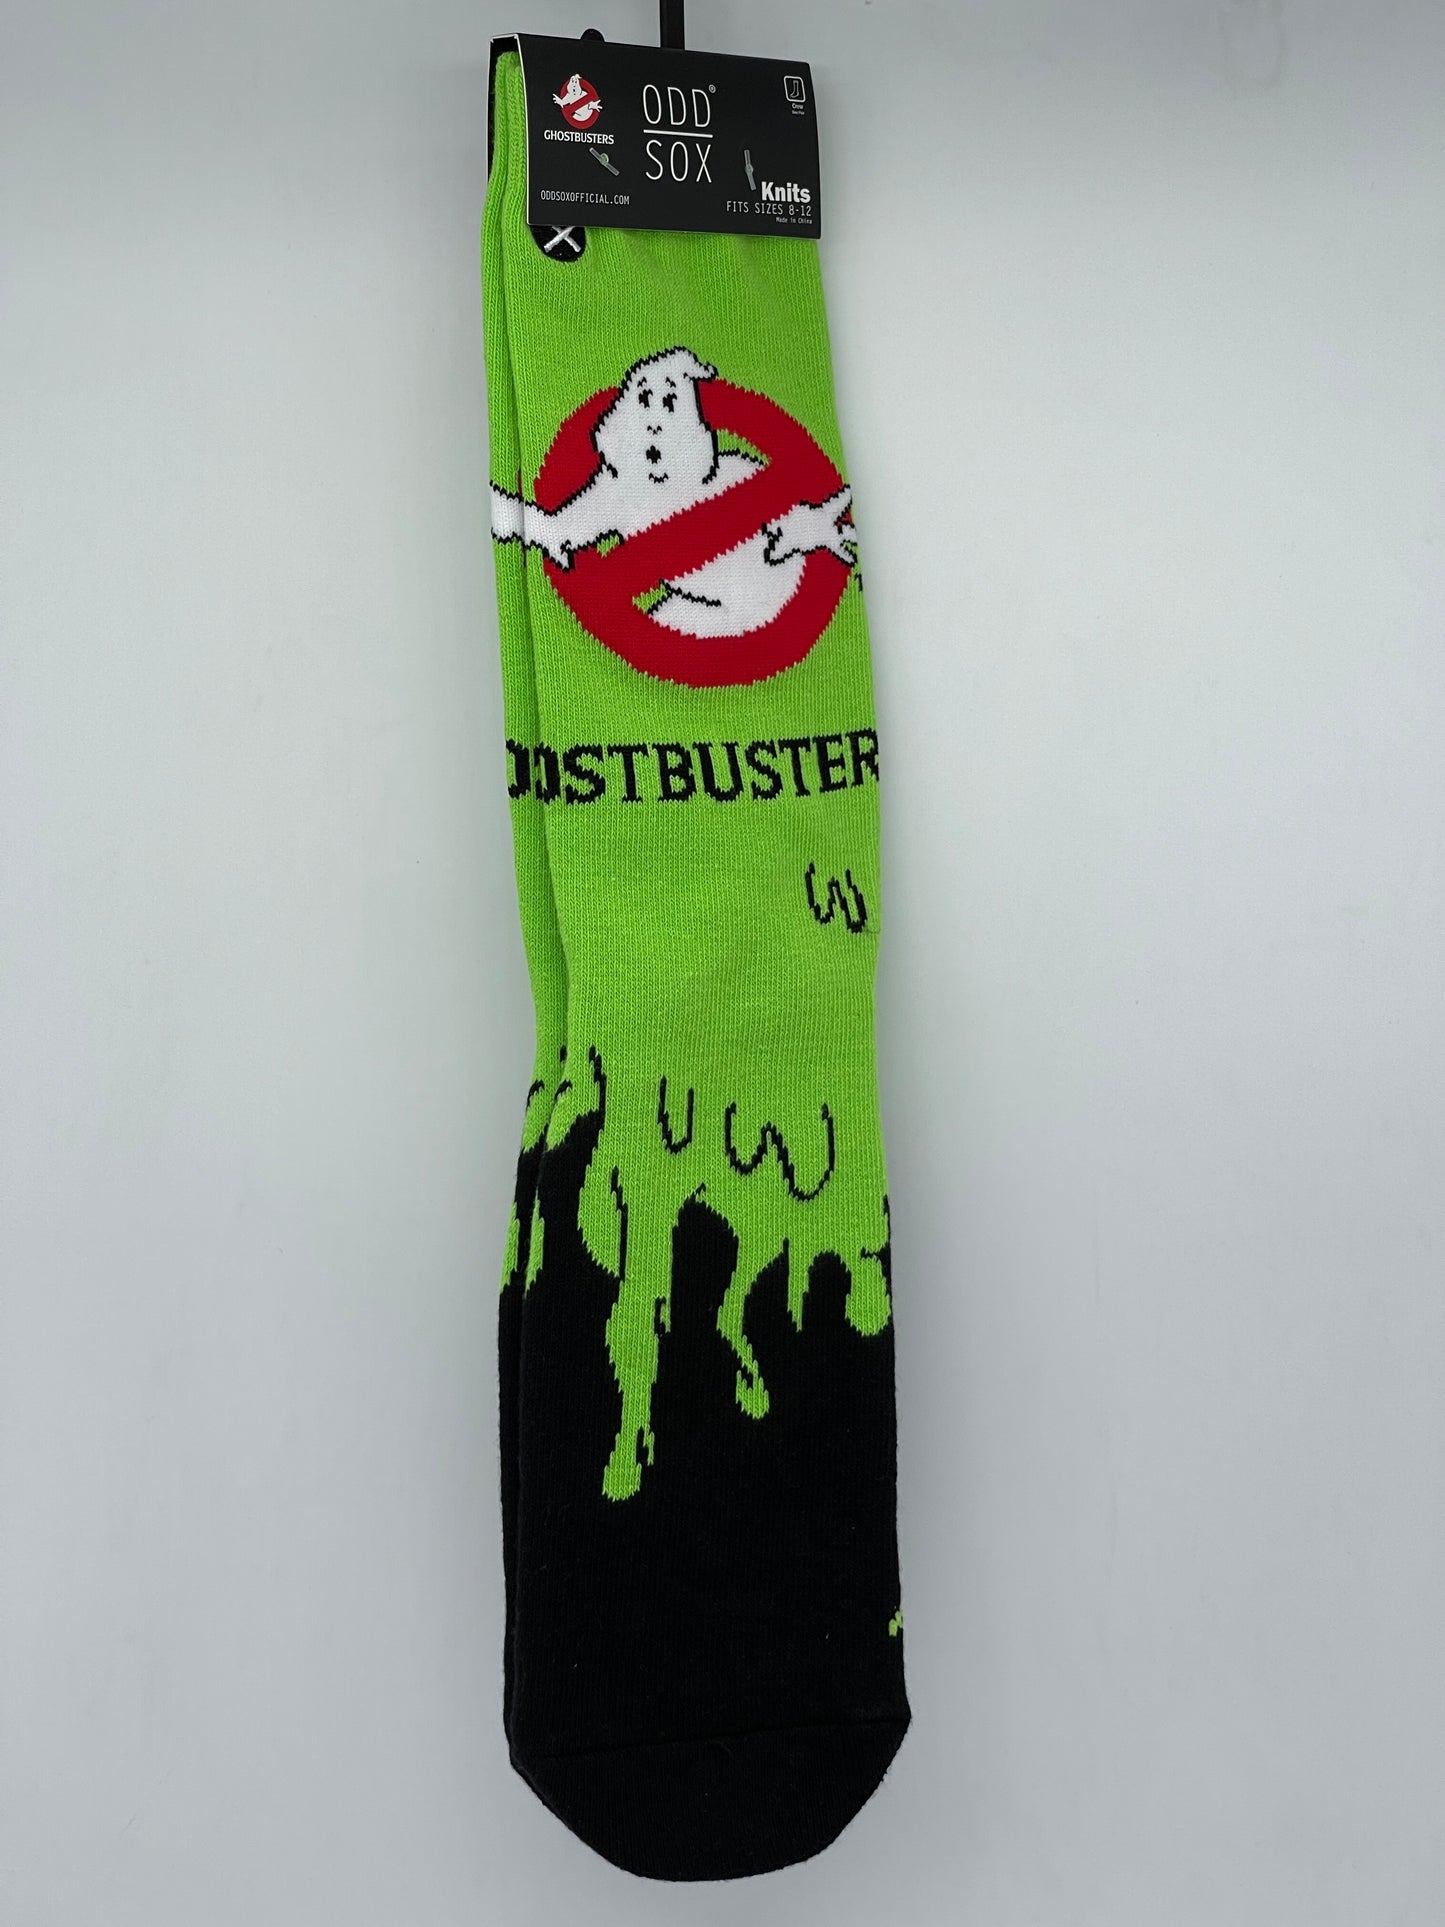 Ghostbusters "Logo" Socken Gr. 8-12 Odd Sox